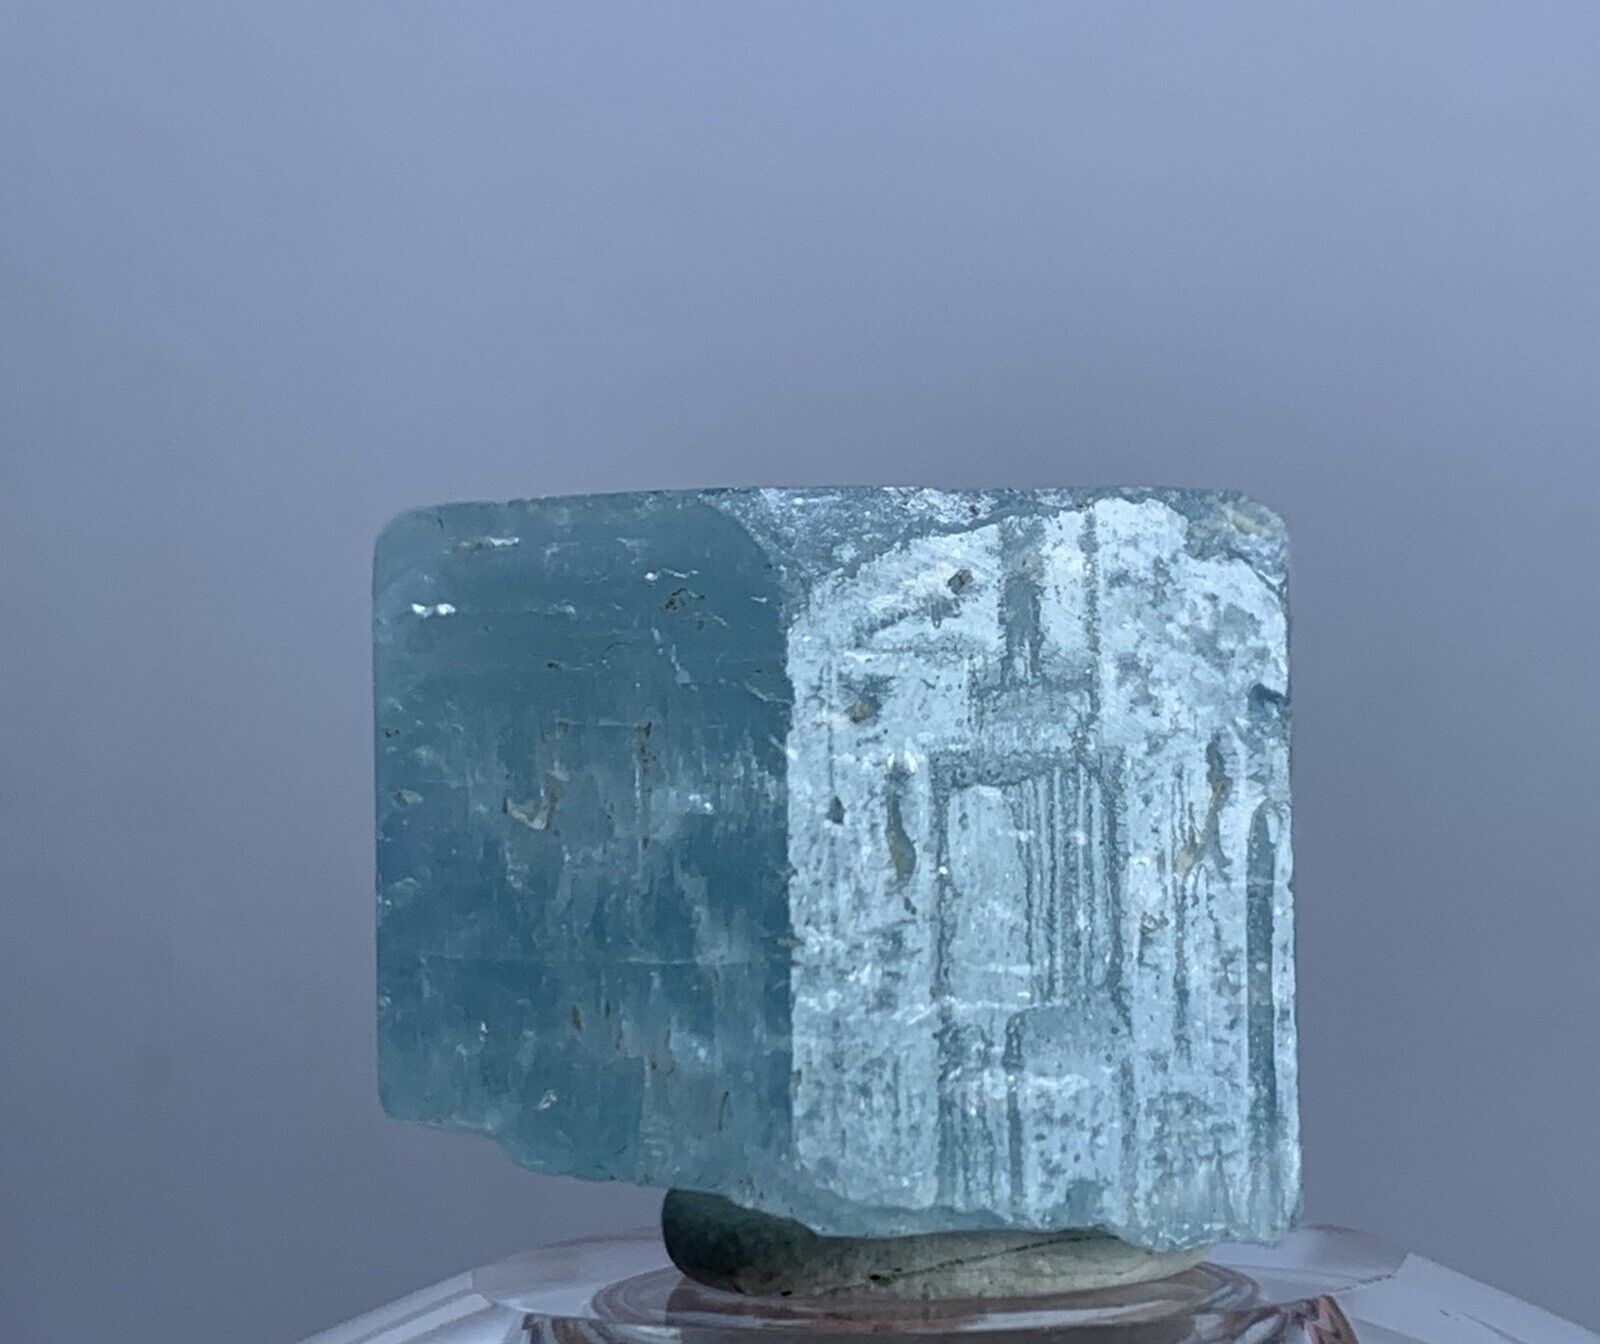 Museum Grade Aquamarine Crystal Terminated Beryl Sky Blue Color Natural Specimen